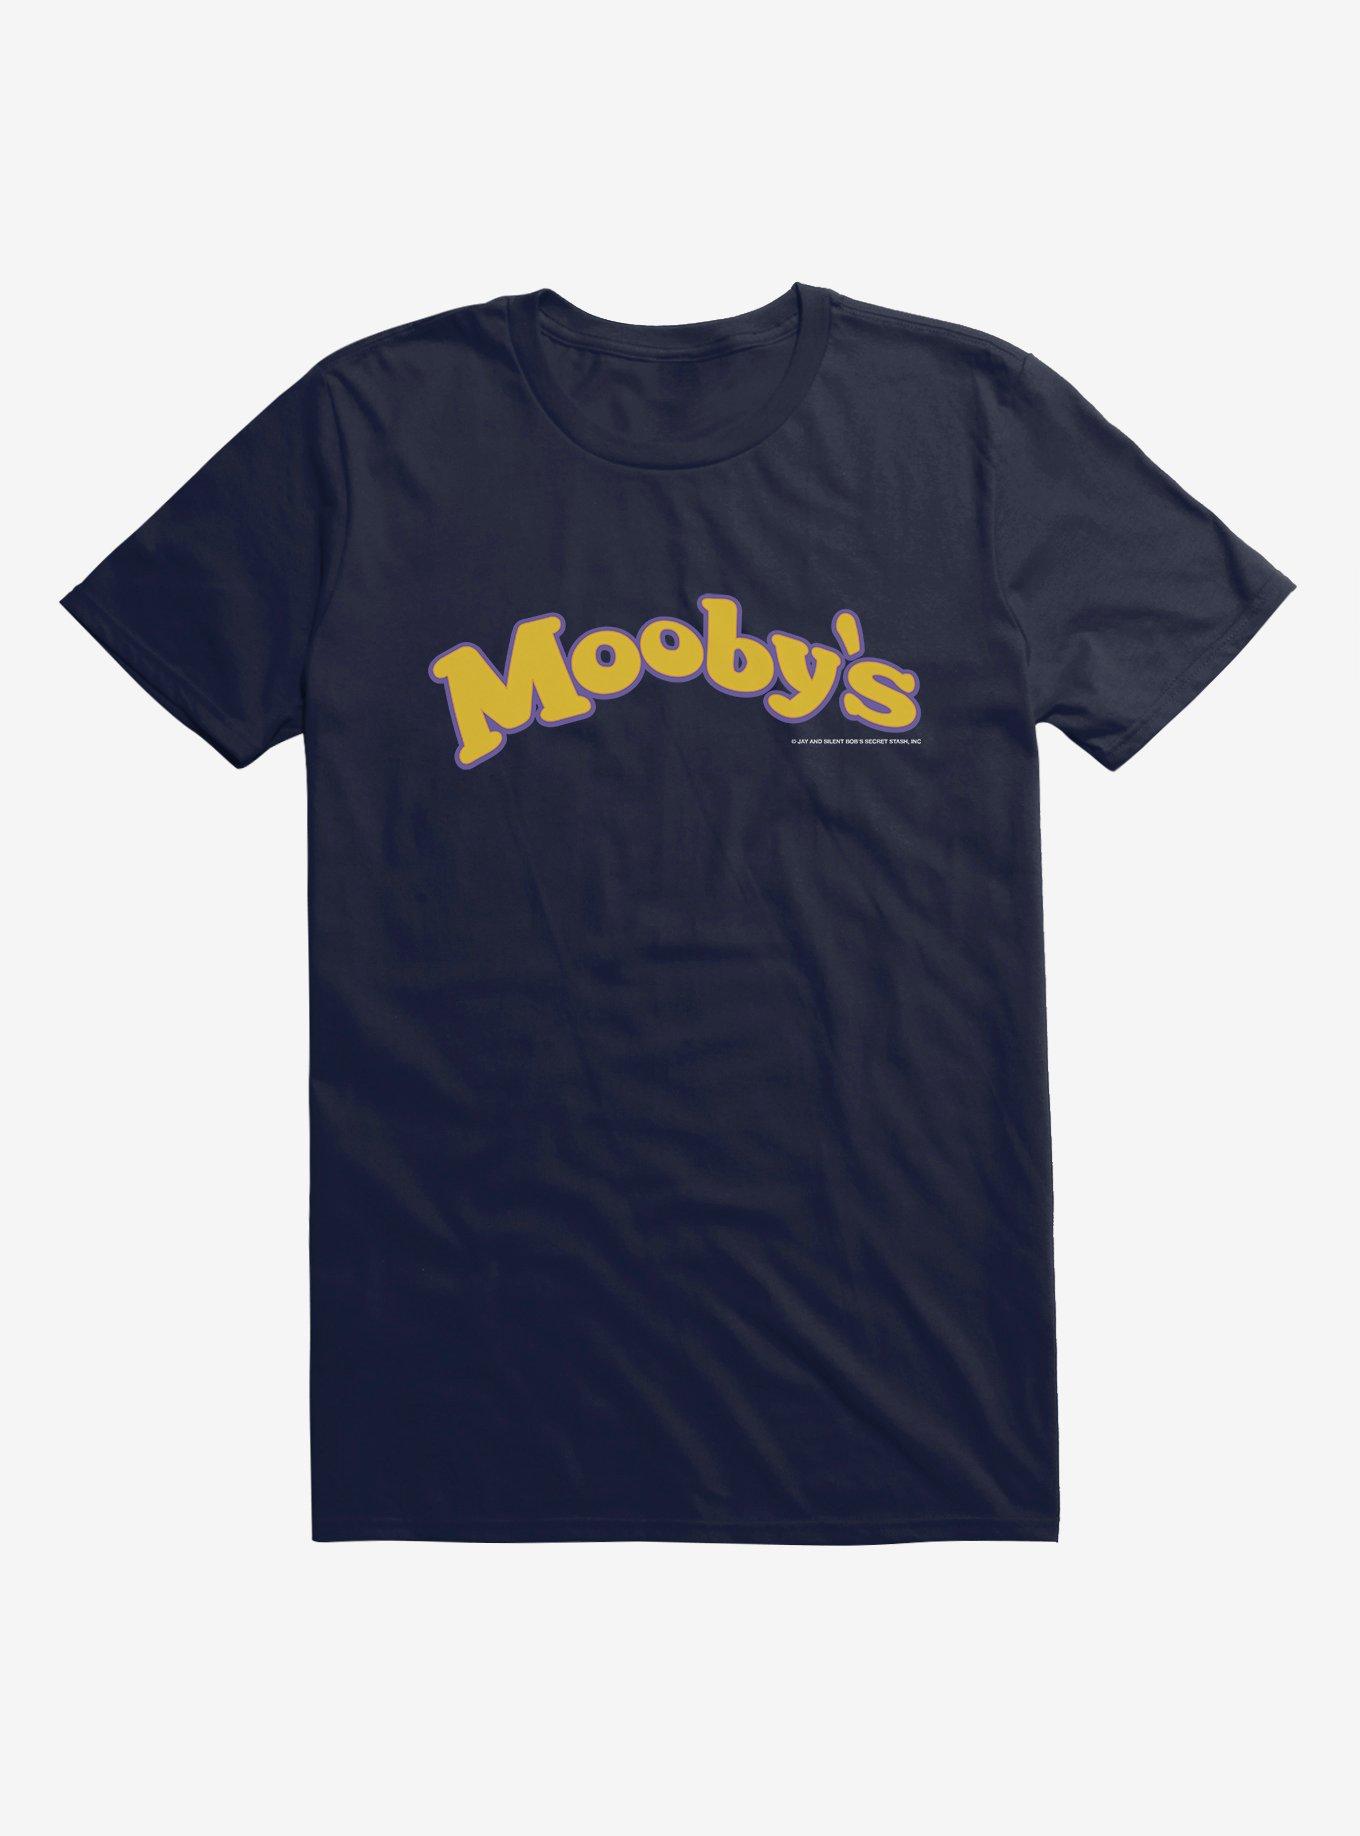 Jay And Silent Bob Reboot Mooby's Name Logo T-Shirt, , hi-res